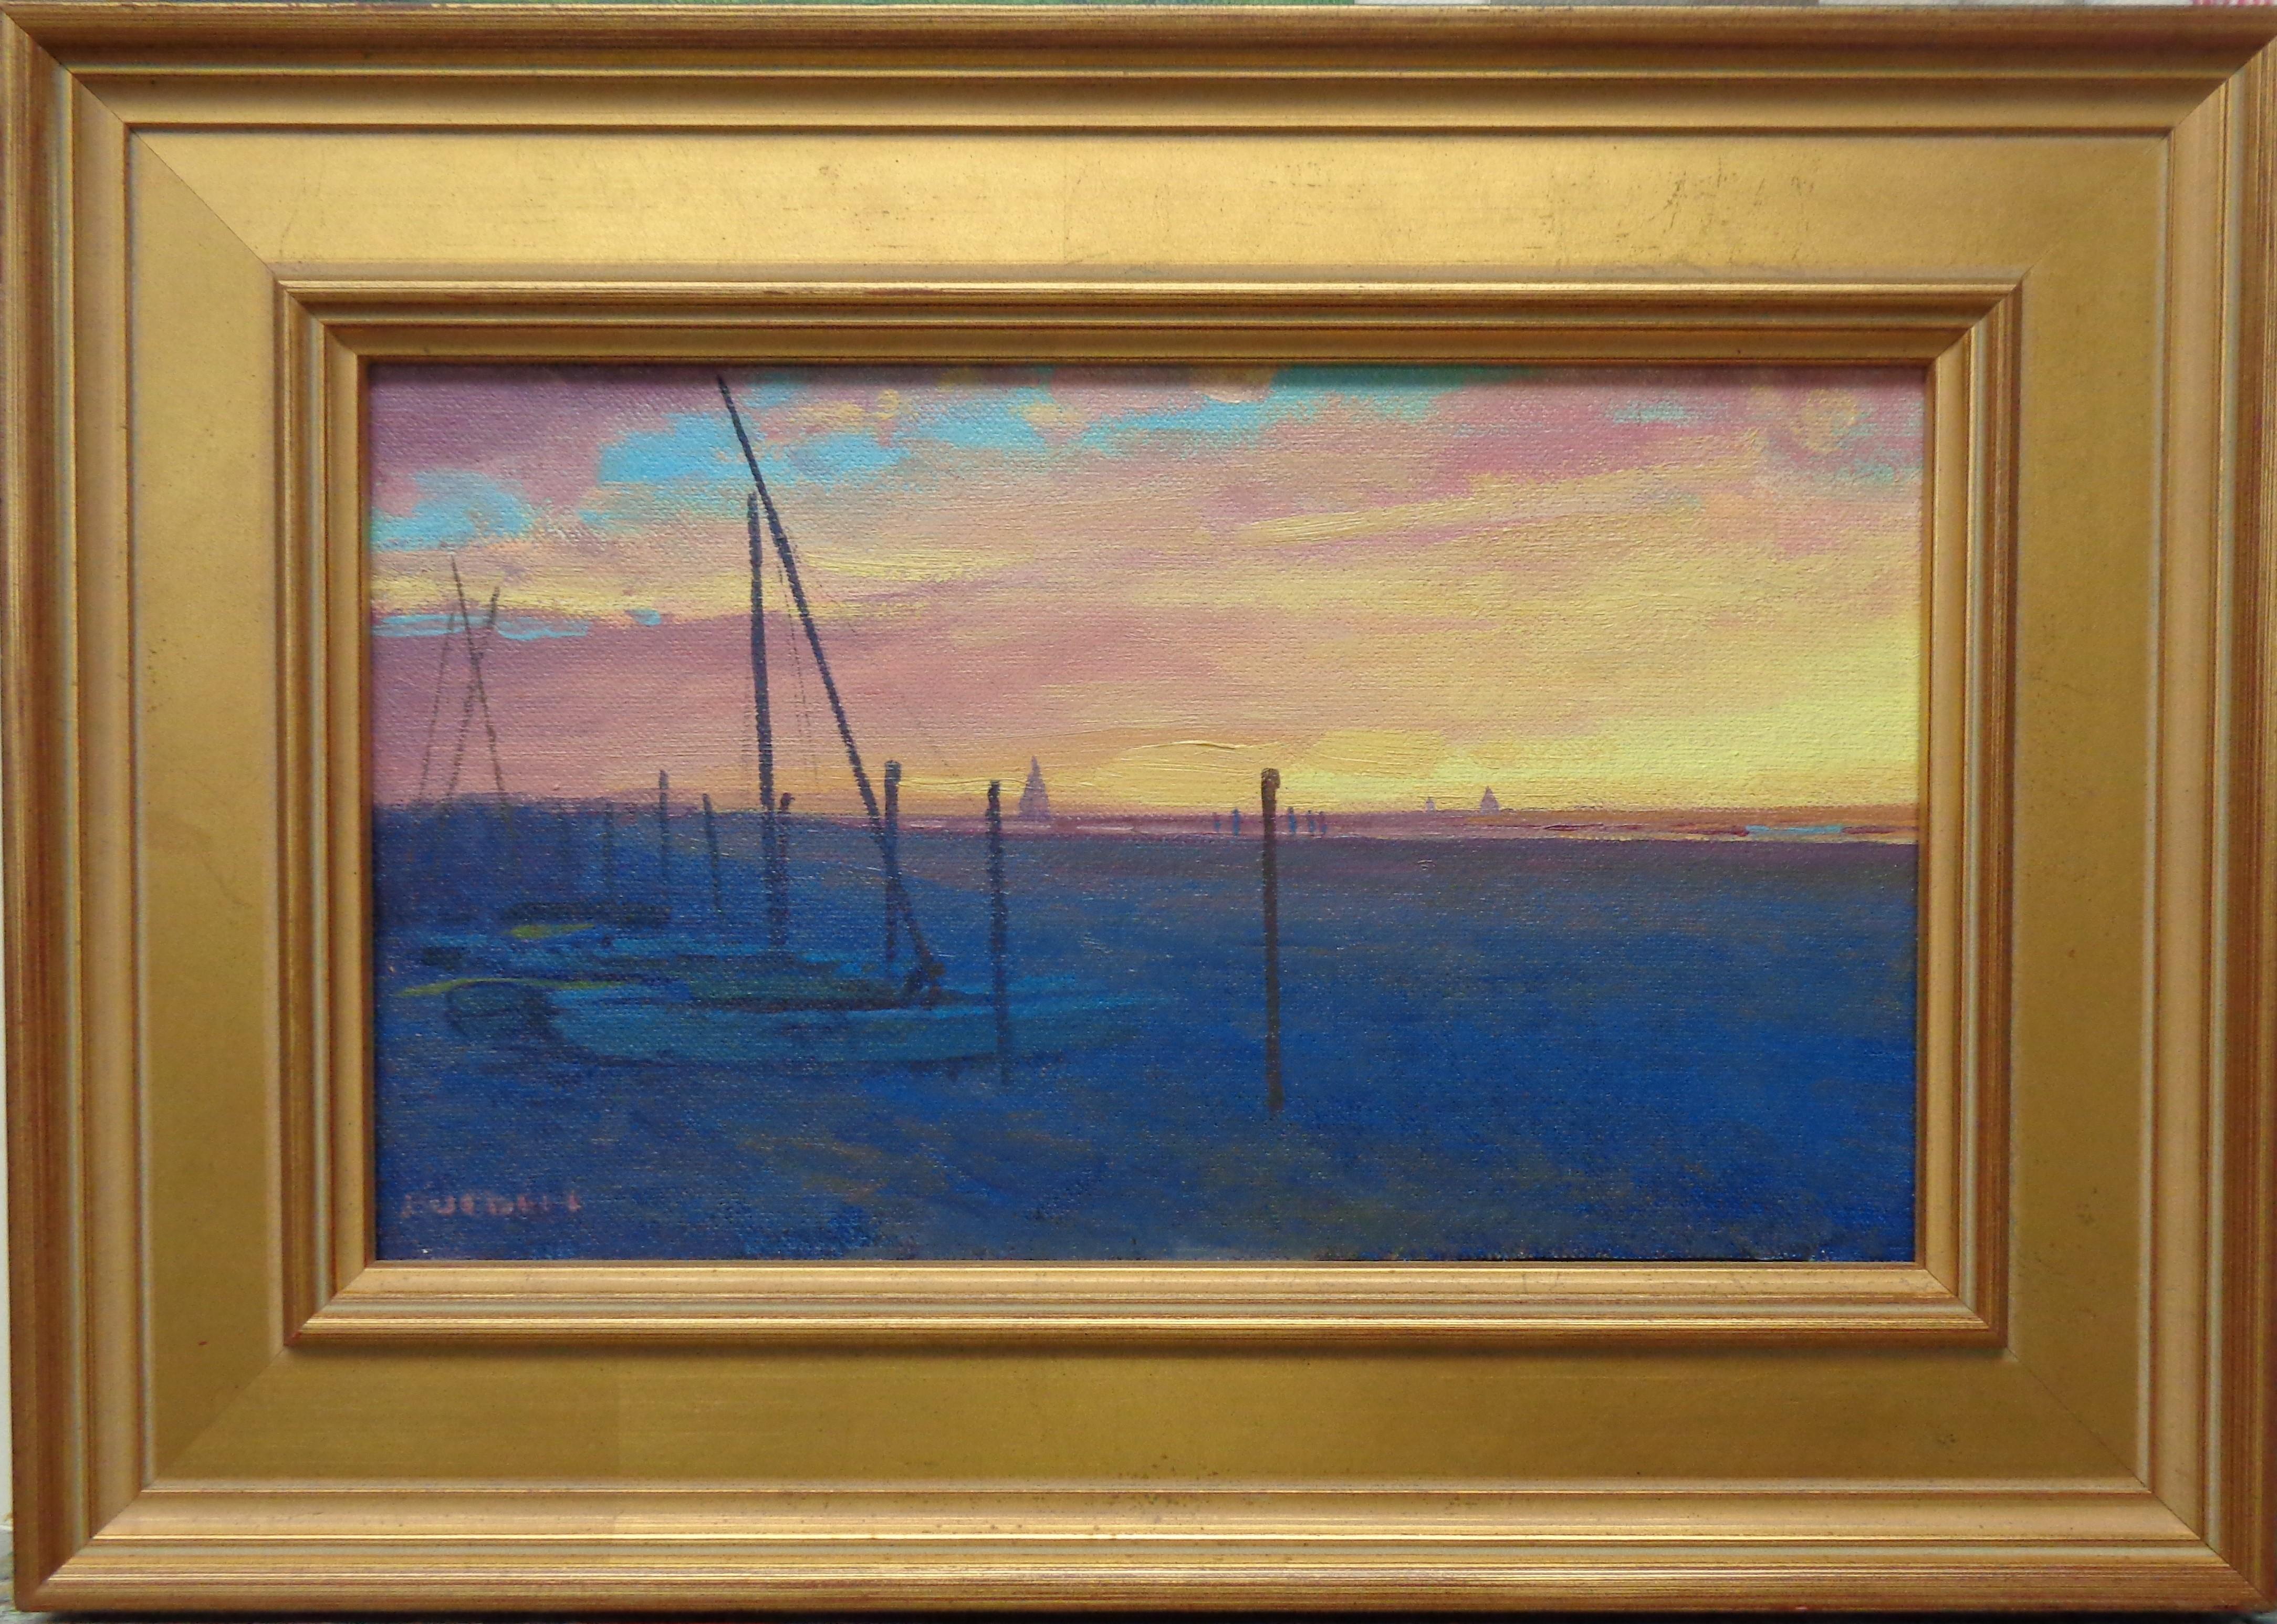 Majestic Morning est une belle  peinture à l'huile sur panneau de toile de l'artiste contemporain primé Michael Budden qui met en valeur une   kaléidoscope de couleurs qui dépeint le lever du soleil le long d'une côte avec des détails très subtils